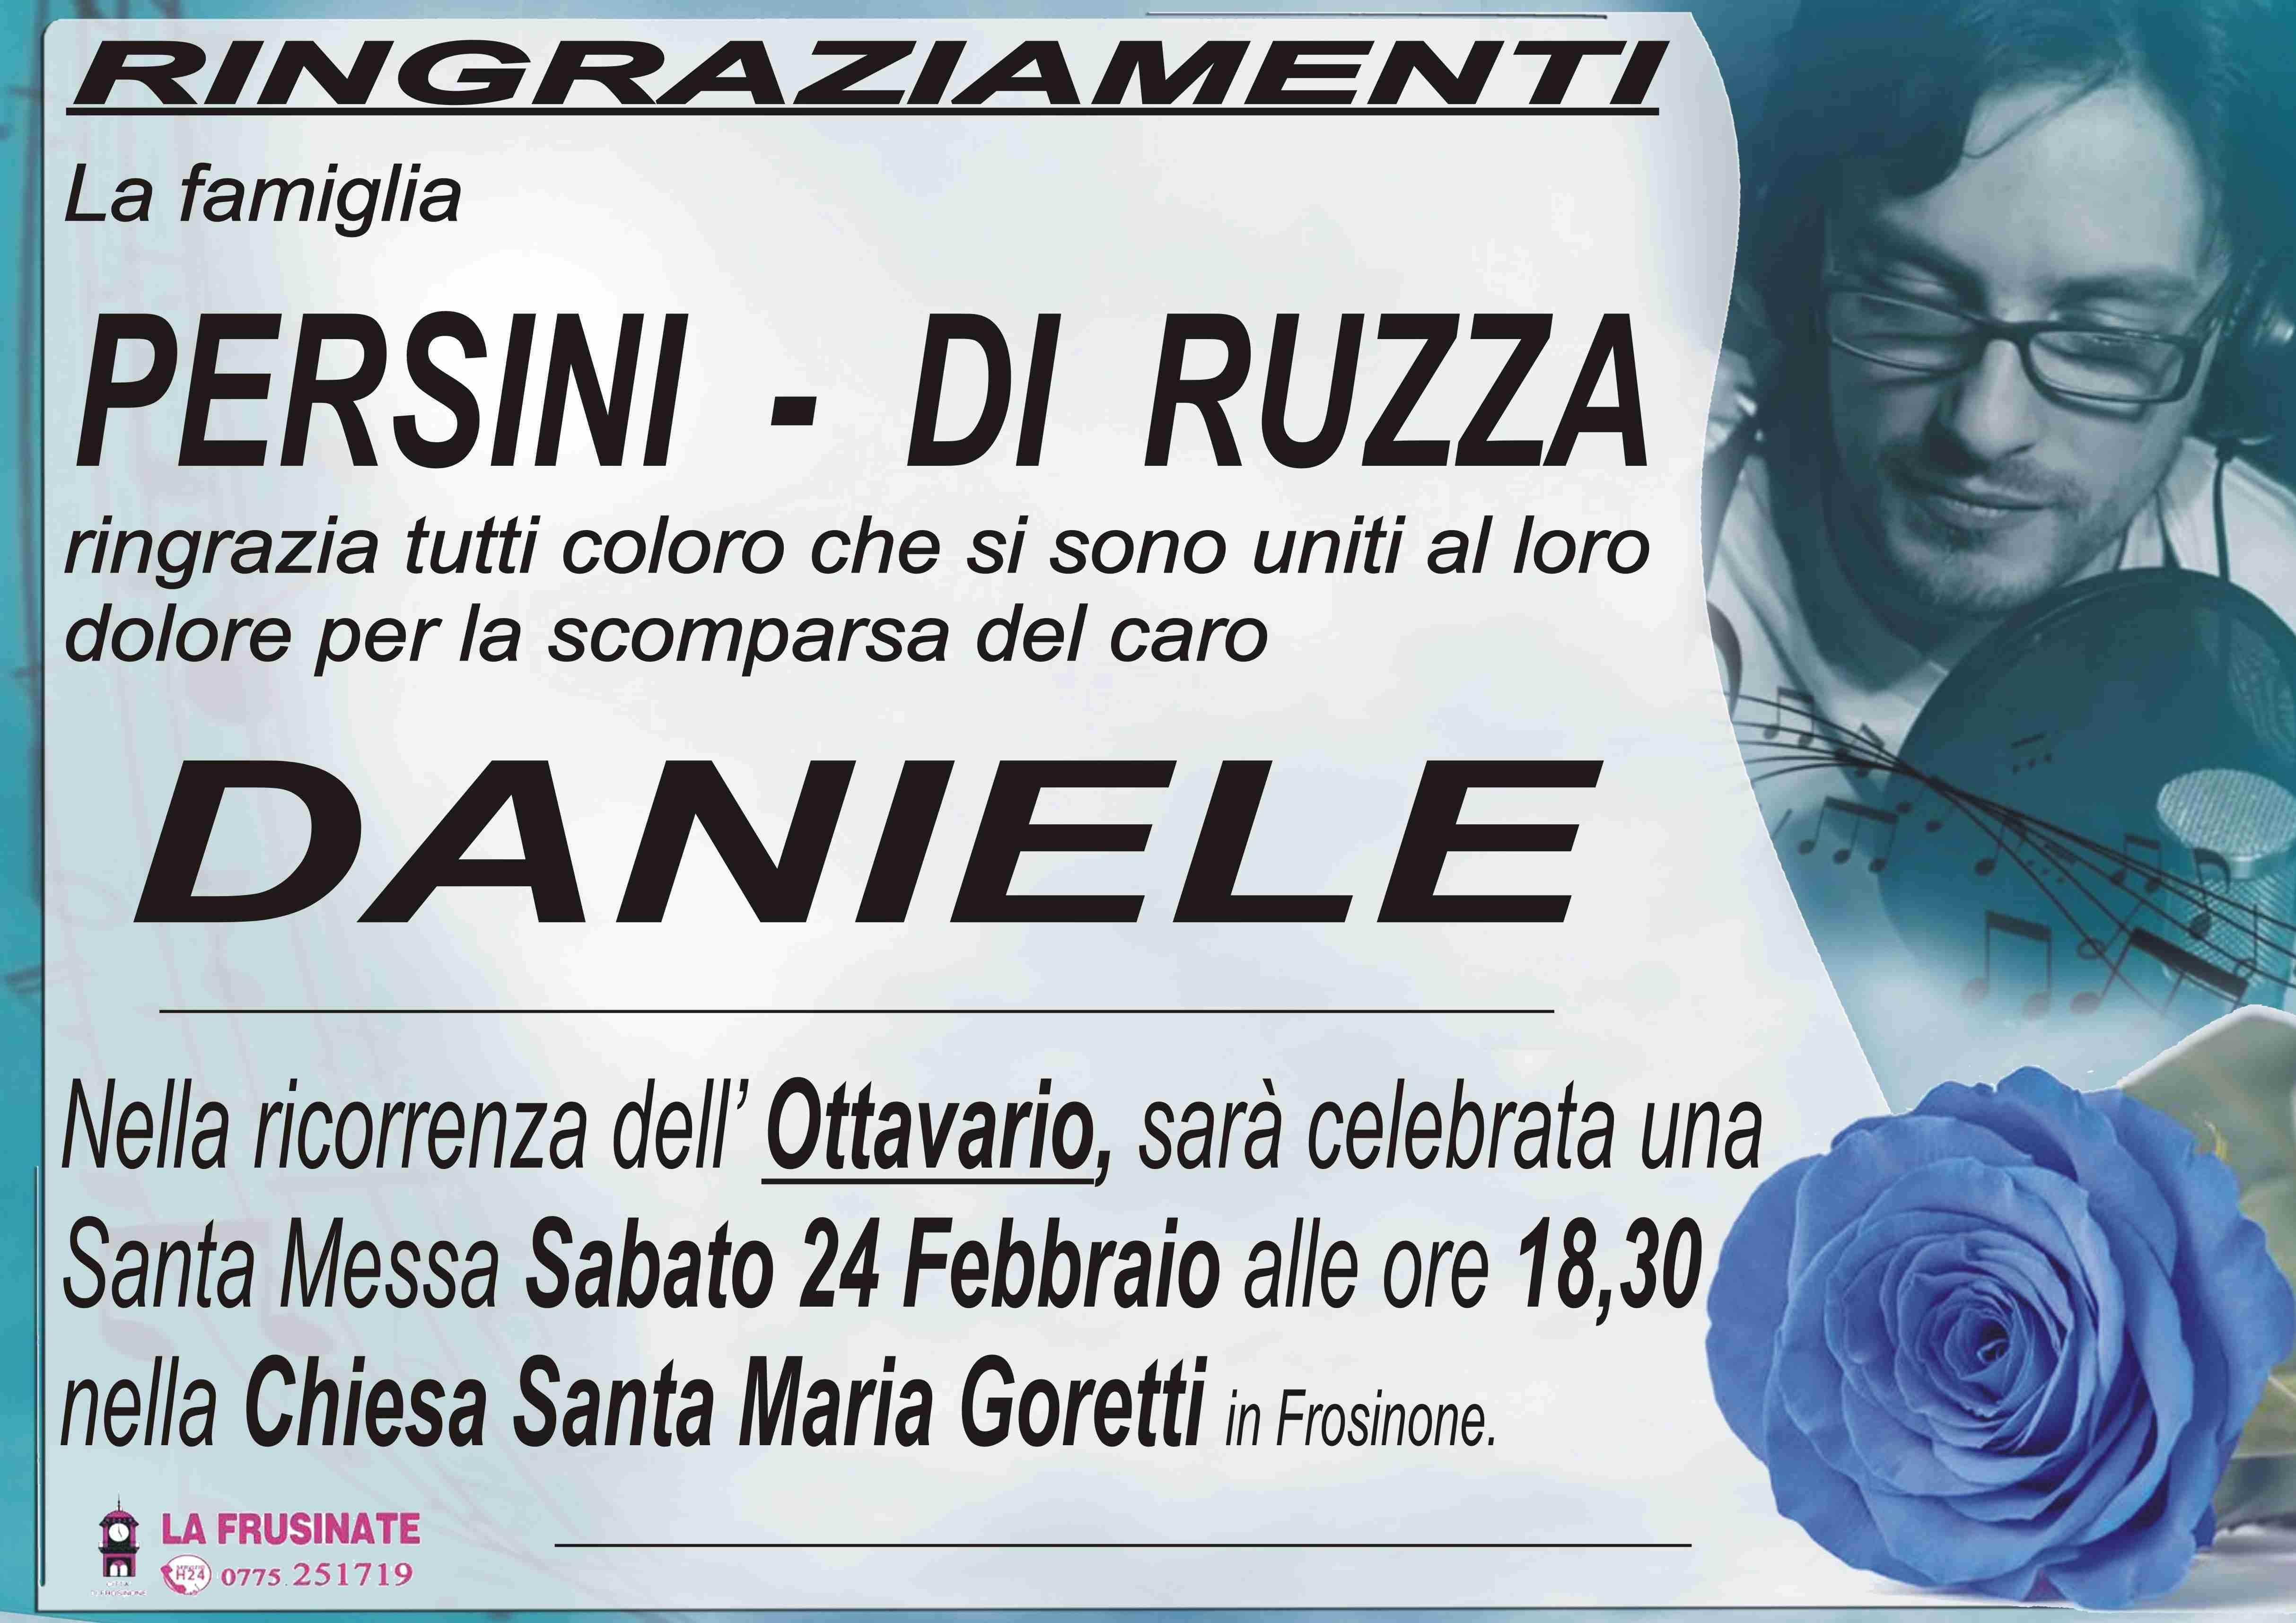 Daniele Di Ruzza